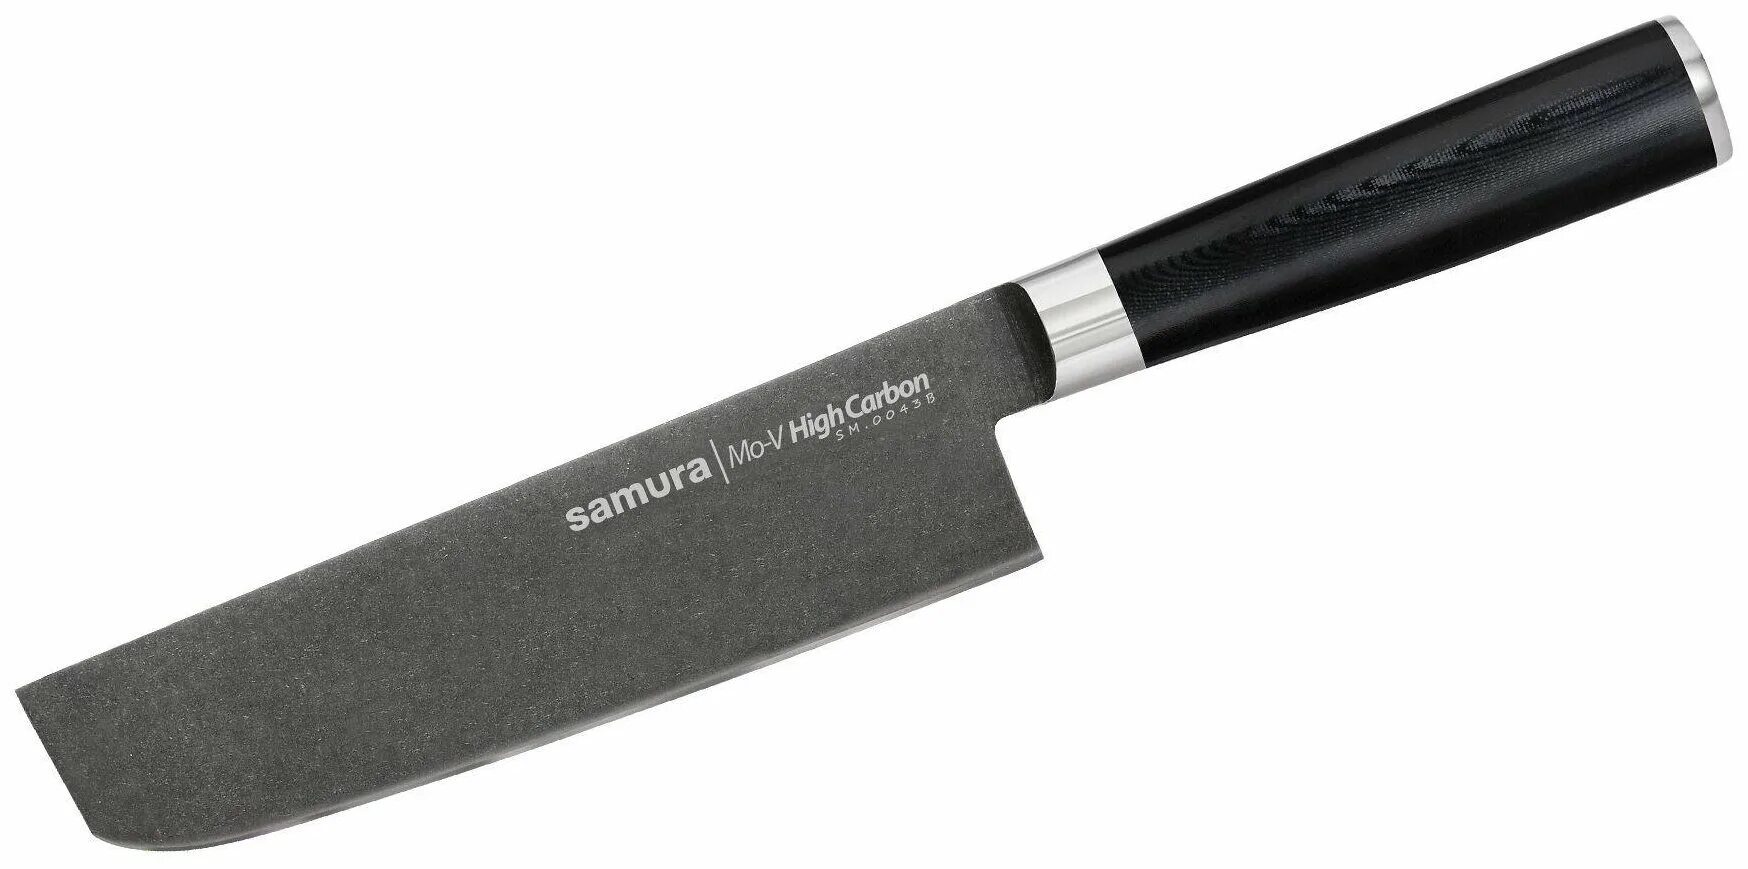 Купить ножи самура в интернет. Samura mo-v SM-0220. Нож Samura mo-v SM-0055. Samura mo-v Stonewash. Samura mo-v SM-0087.